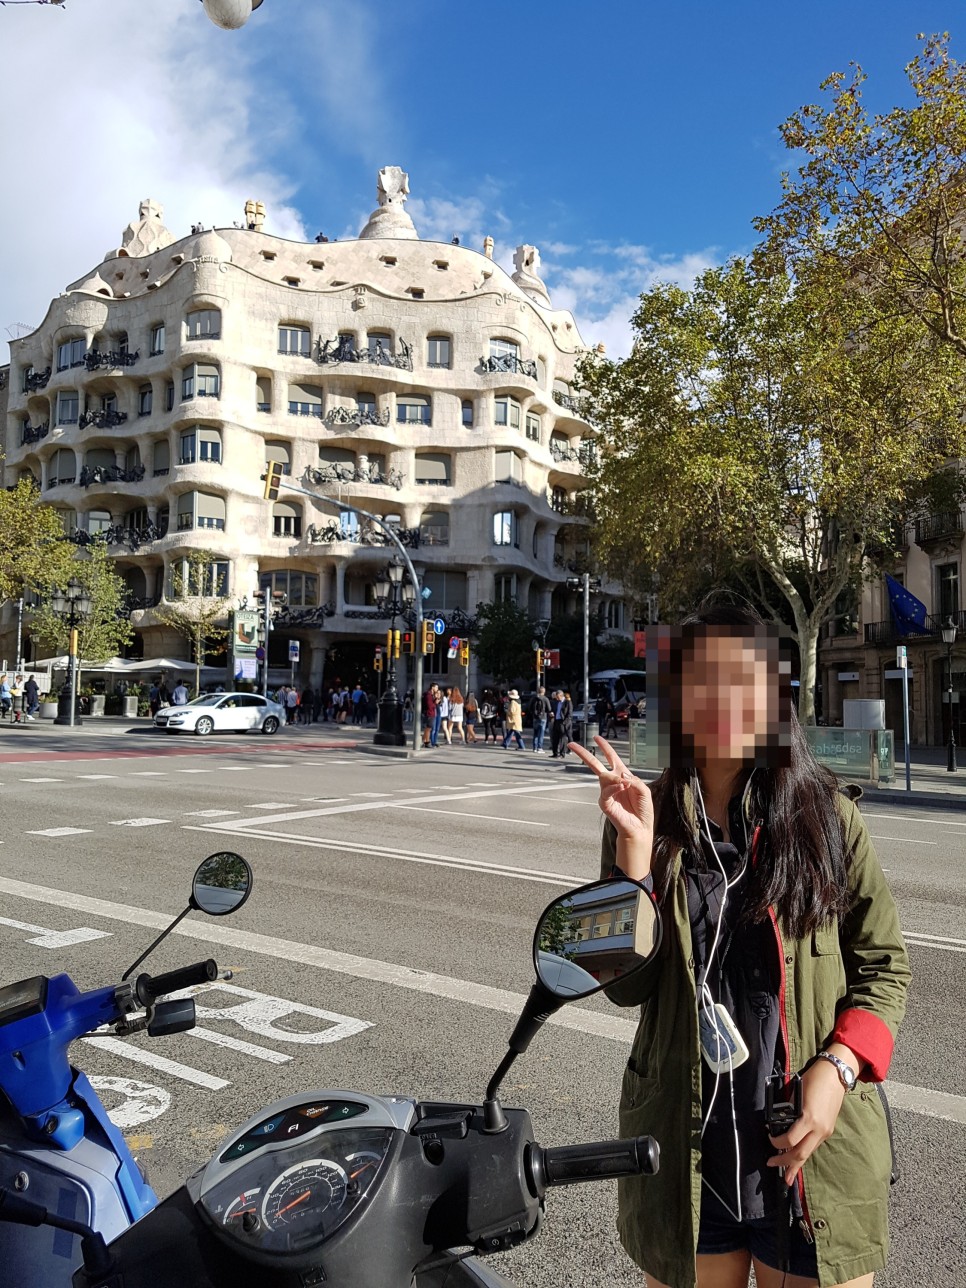 블로그씨) 내 인생 최고의 여행지 - 8박 10일 스페인 여행, 머글의 메시 영접